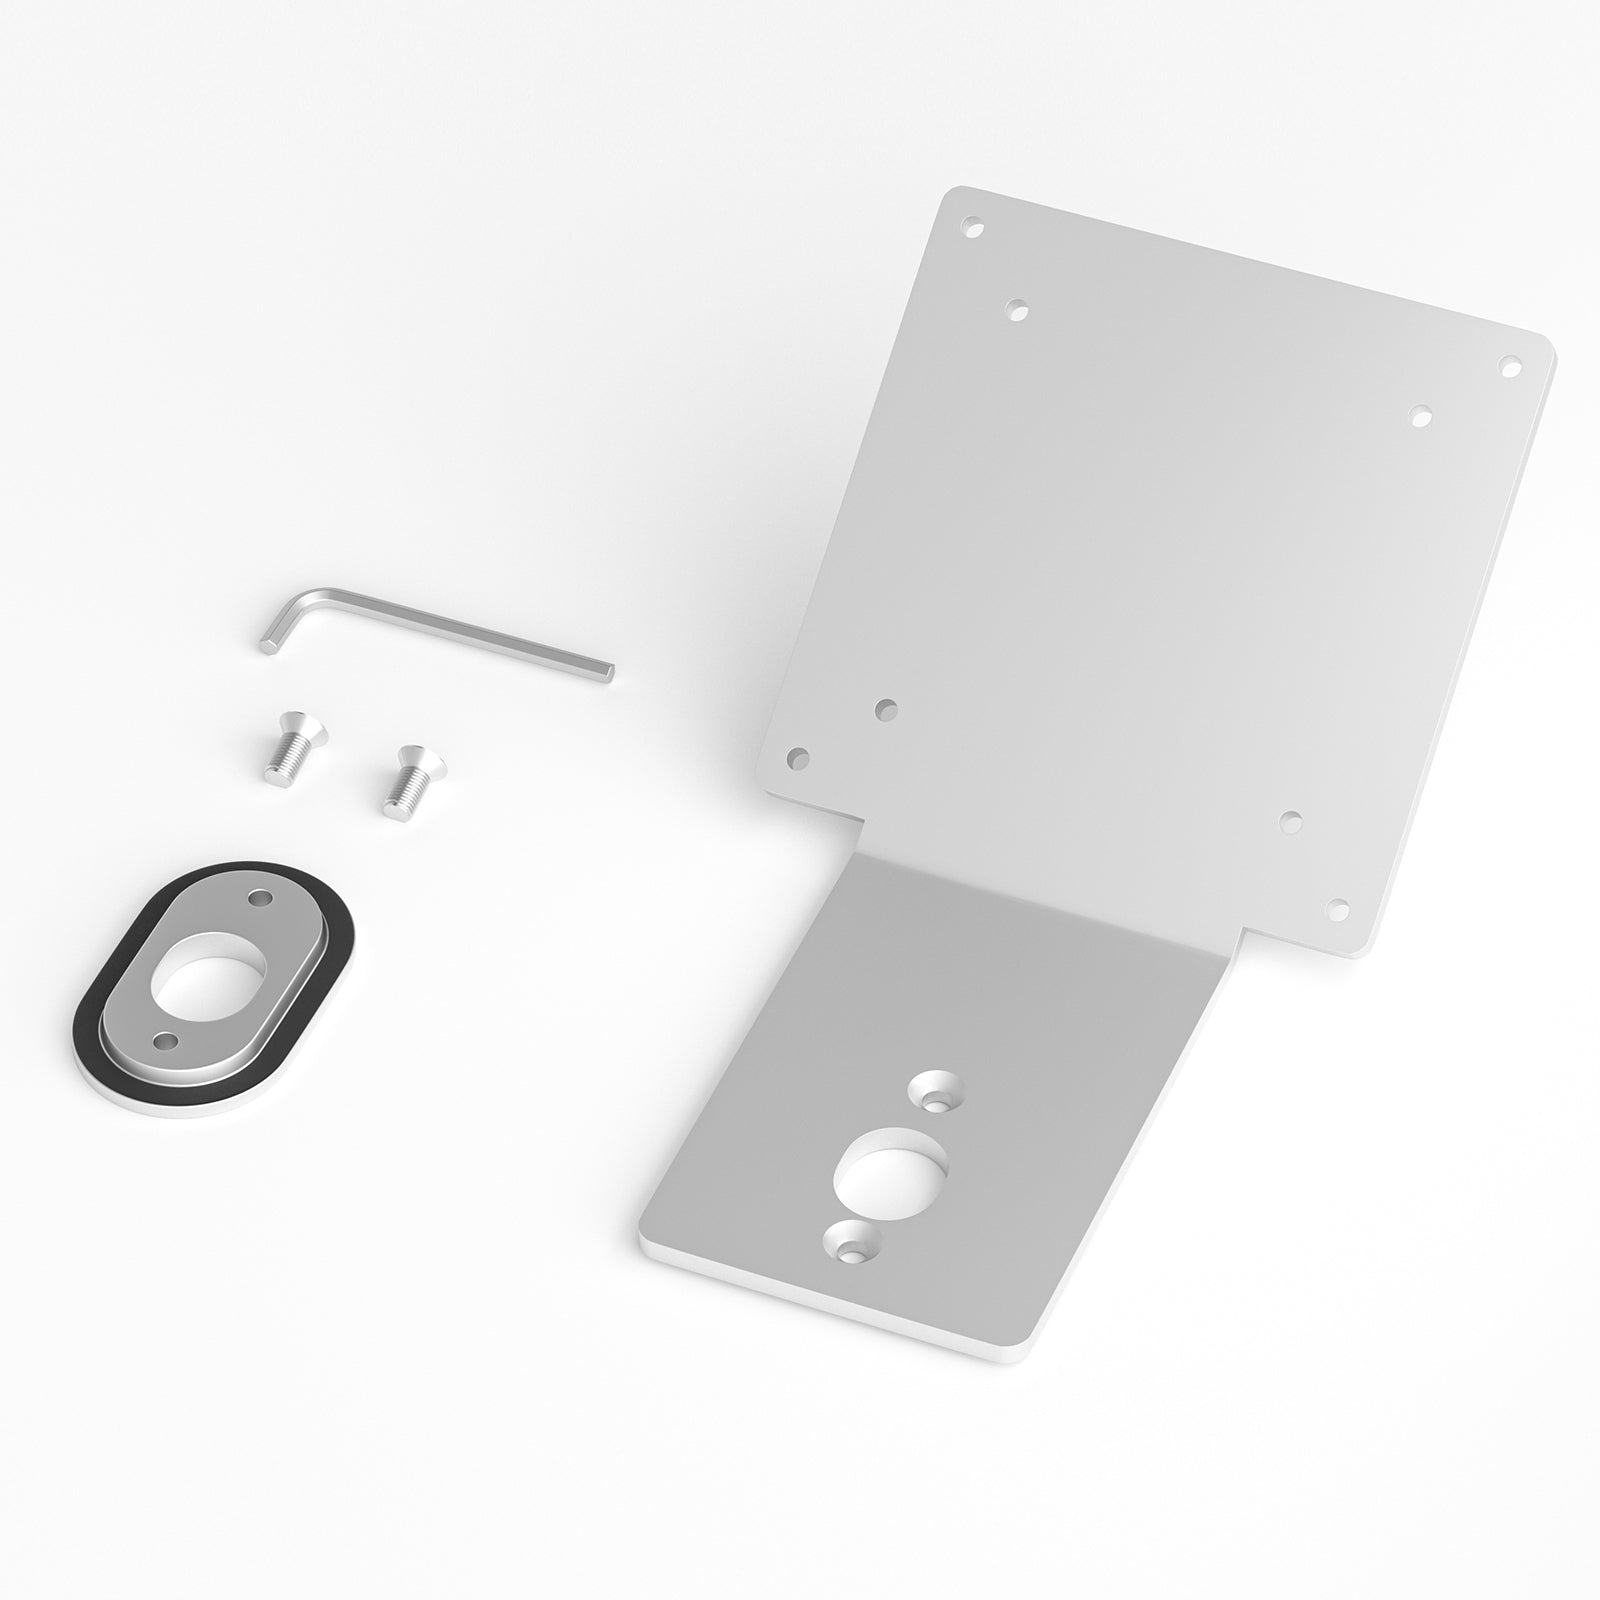 Kit de montage VESA - Apple (BE)